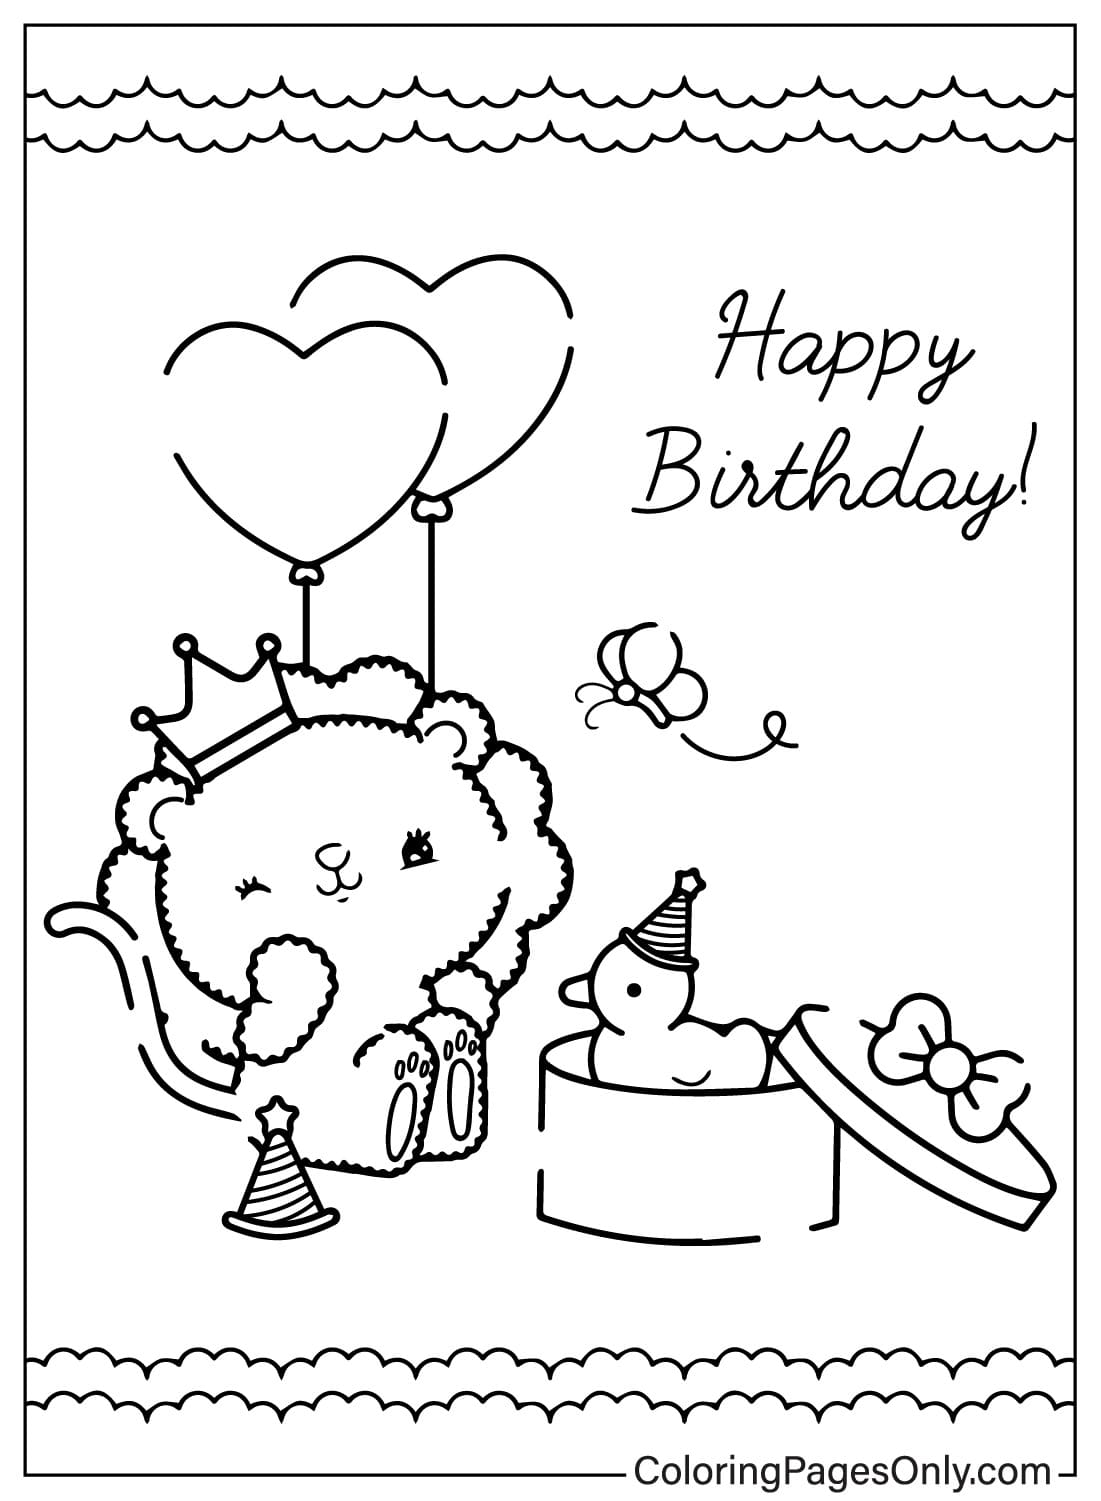 Раскраска с поздравительной открыткой на день рождения, которую можно бесплатно распечатать из открытки с днем ​​рождения